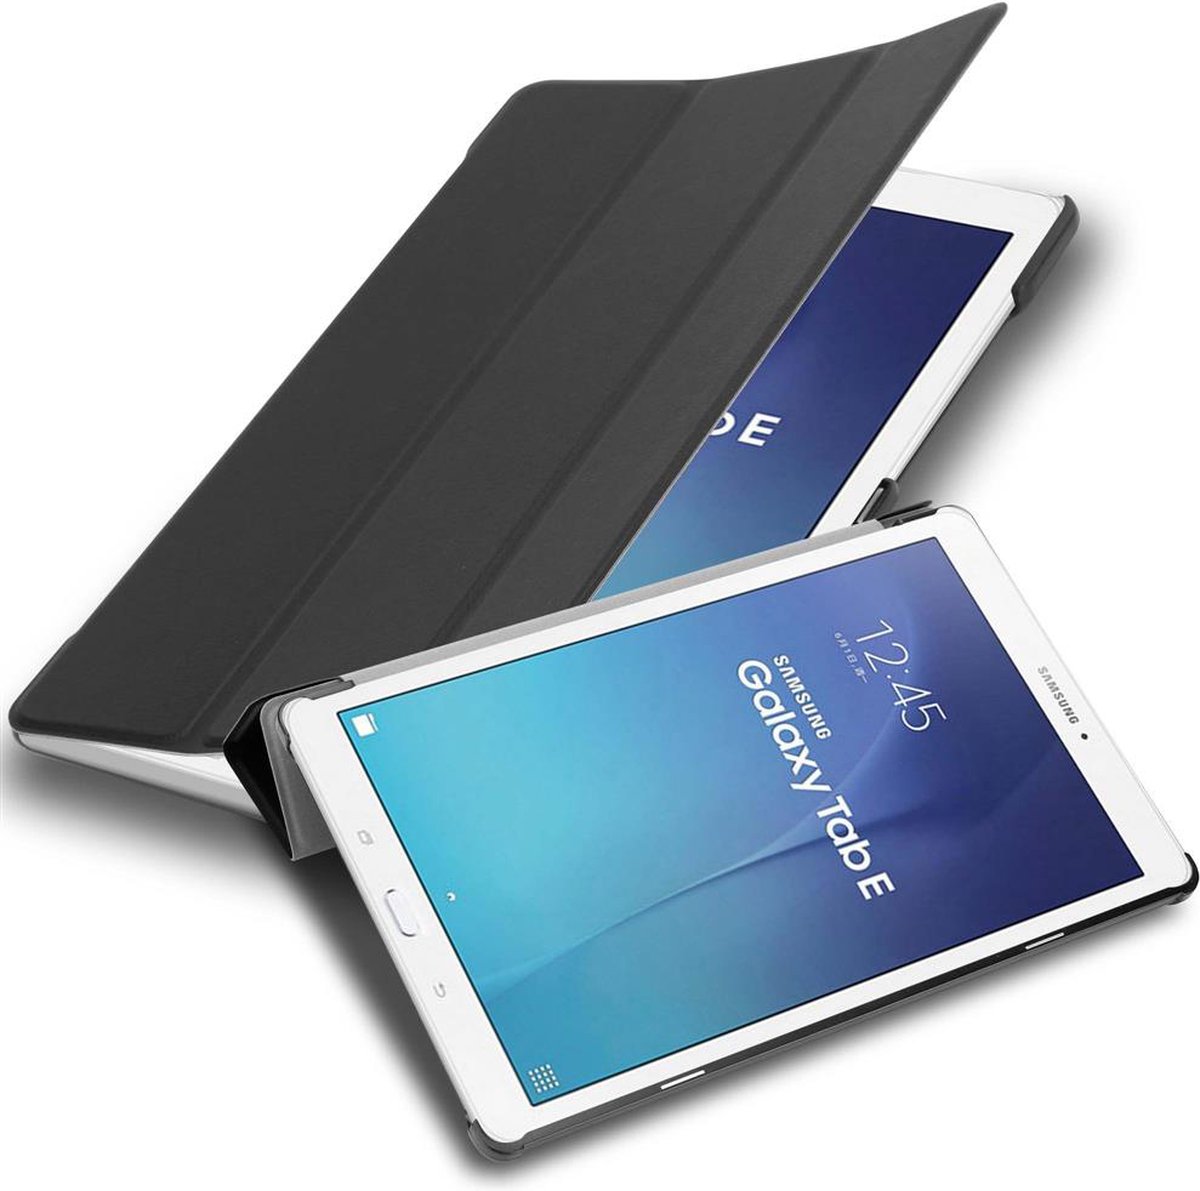 Cadorabo Tablet Hoesje voor Samsung Galaxy Tab E (9.6 inch) in SATIJN ZWART - Ultra dun beschermend geval ZONDER automatische Wake Up en Stand functie Book Case Cover Etui